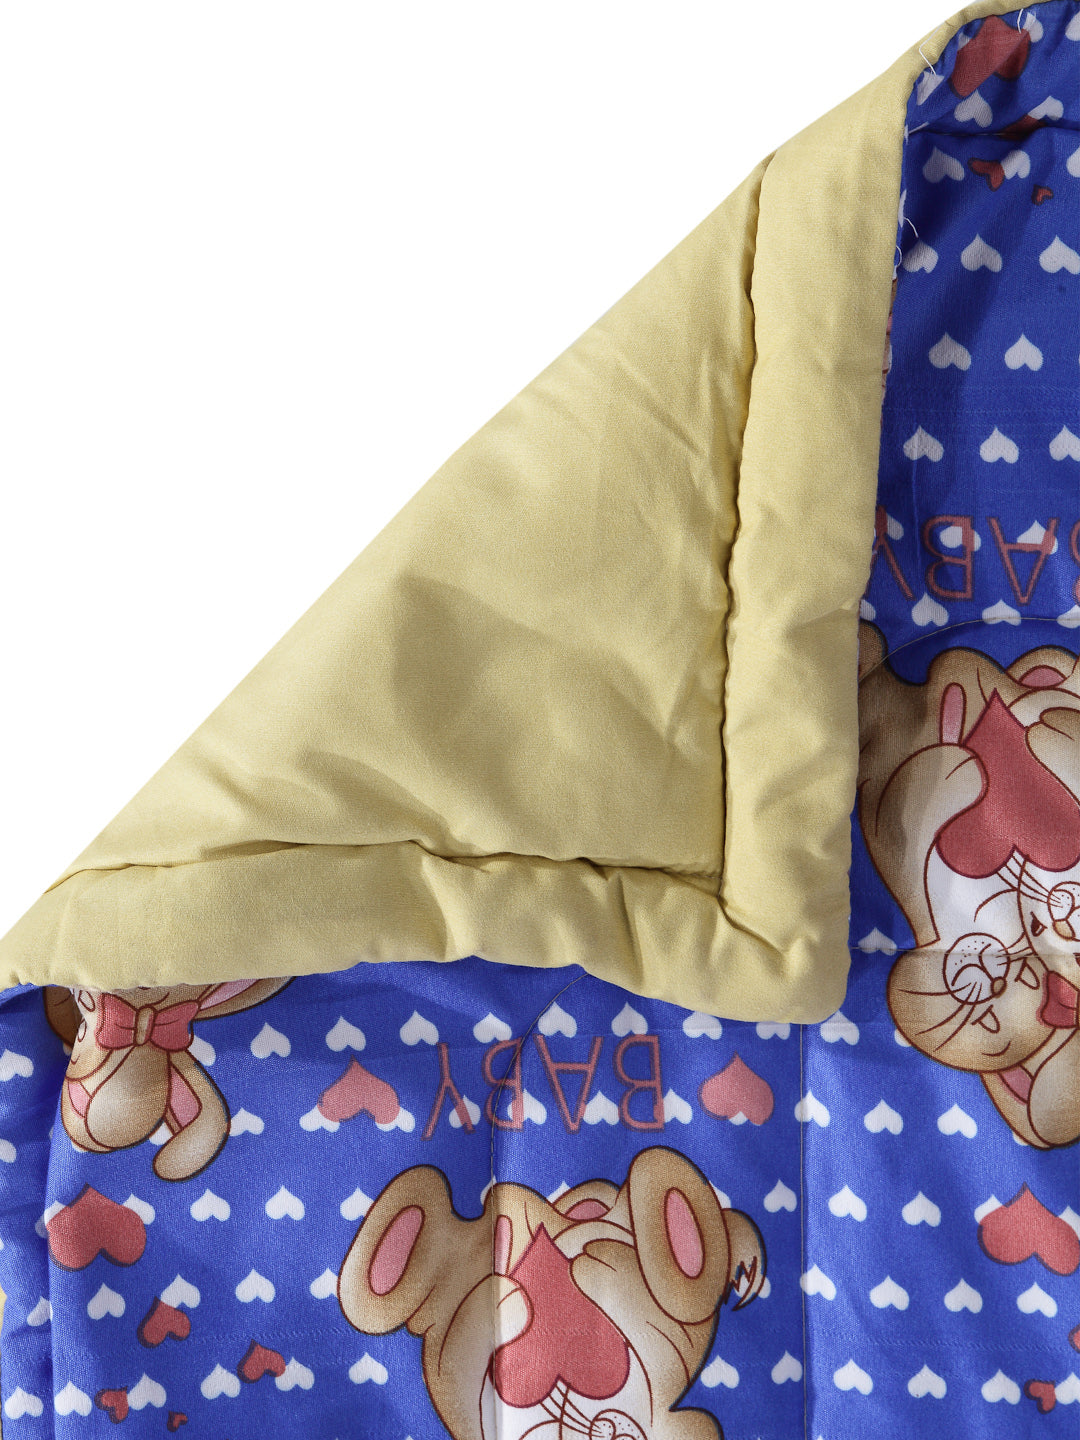 Arrabi Blue Cartoon Cotton Blend Double Size Comforter Bedding Set with 2 Pillow Cover (235 x 215 cm)